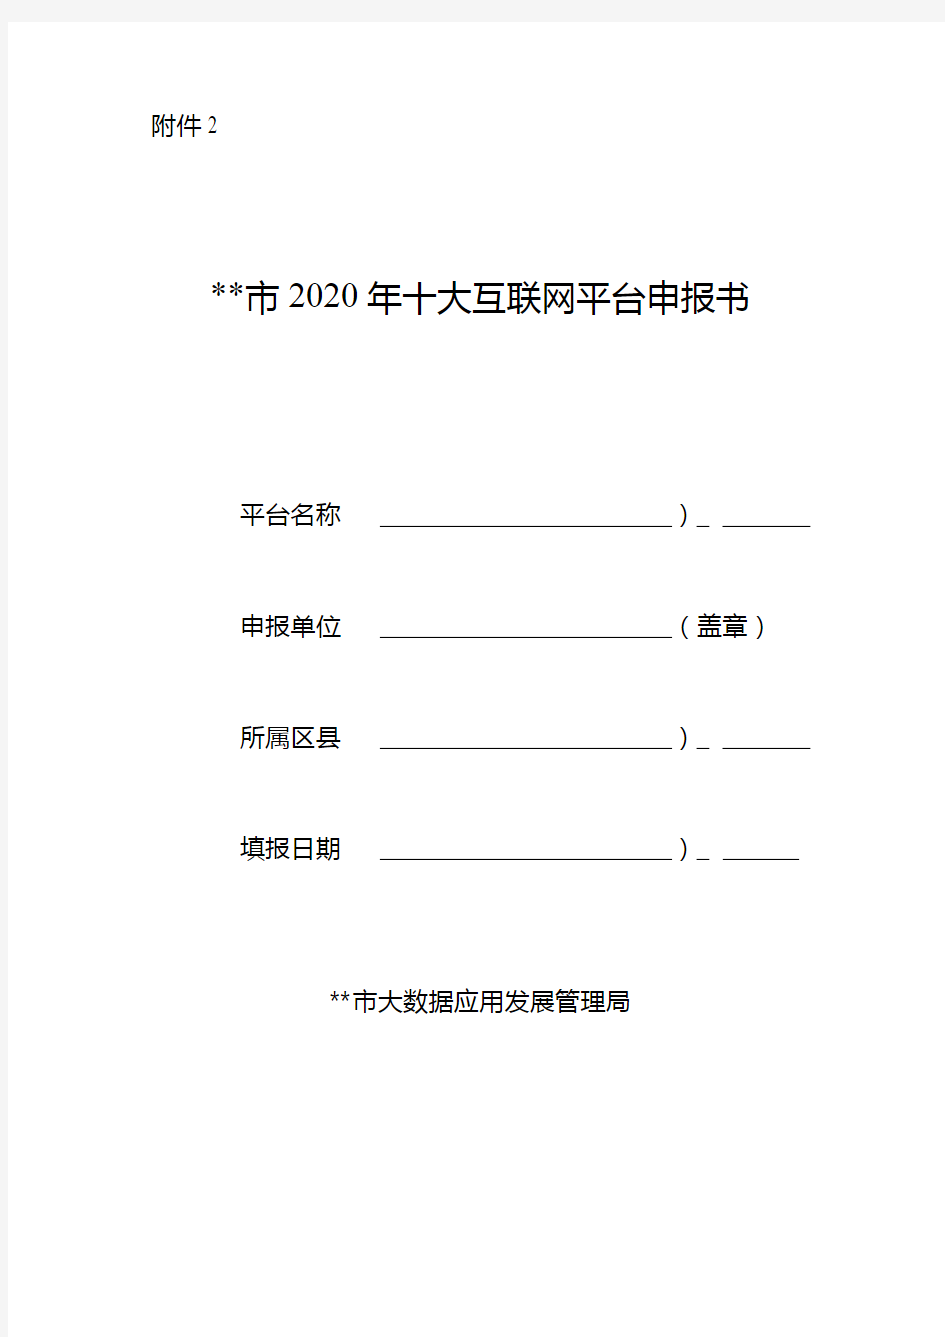 重庆市2020年十大互联网平台申报书填报说明【模板】